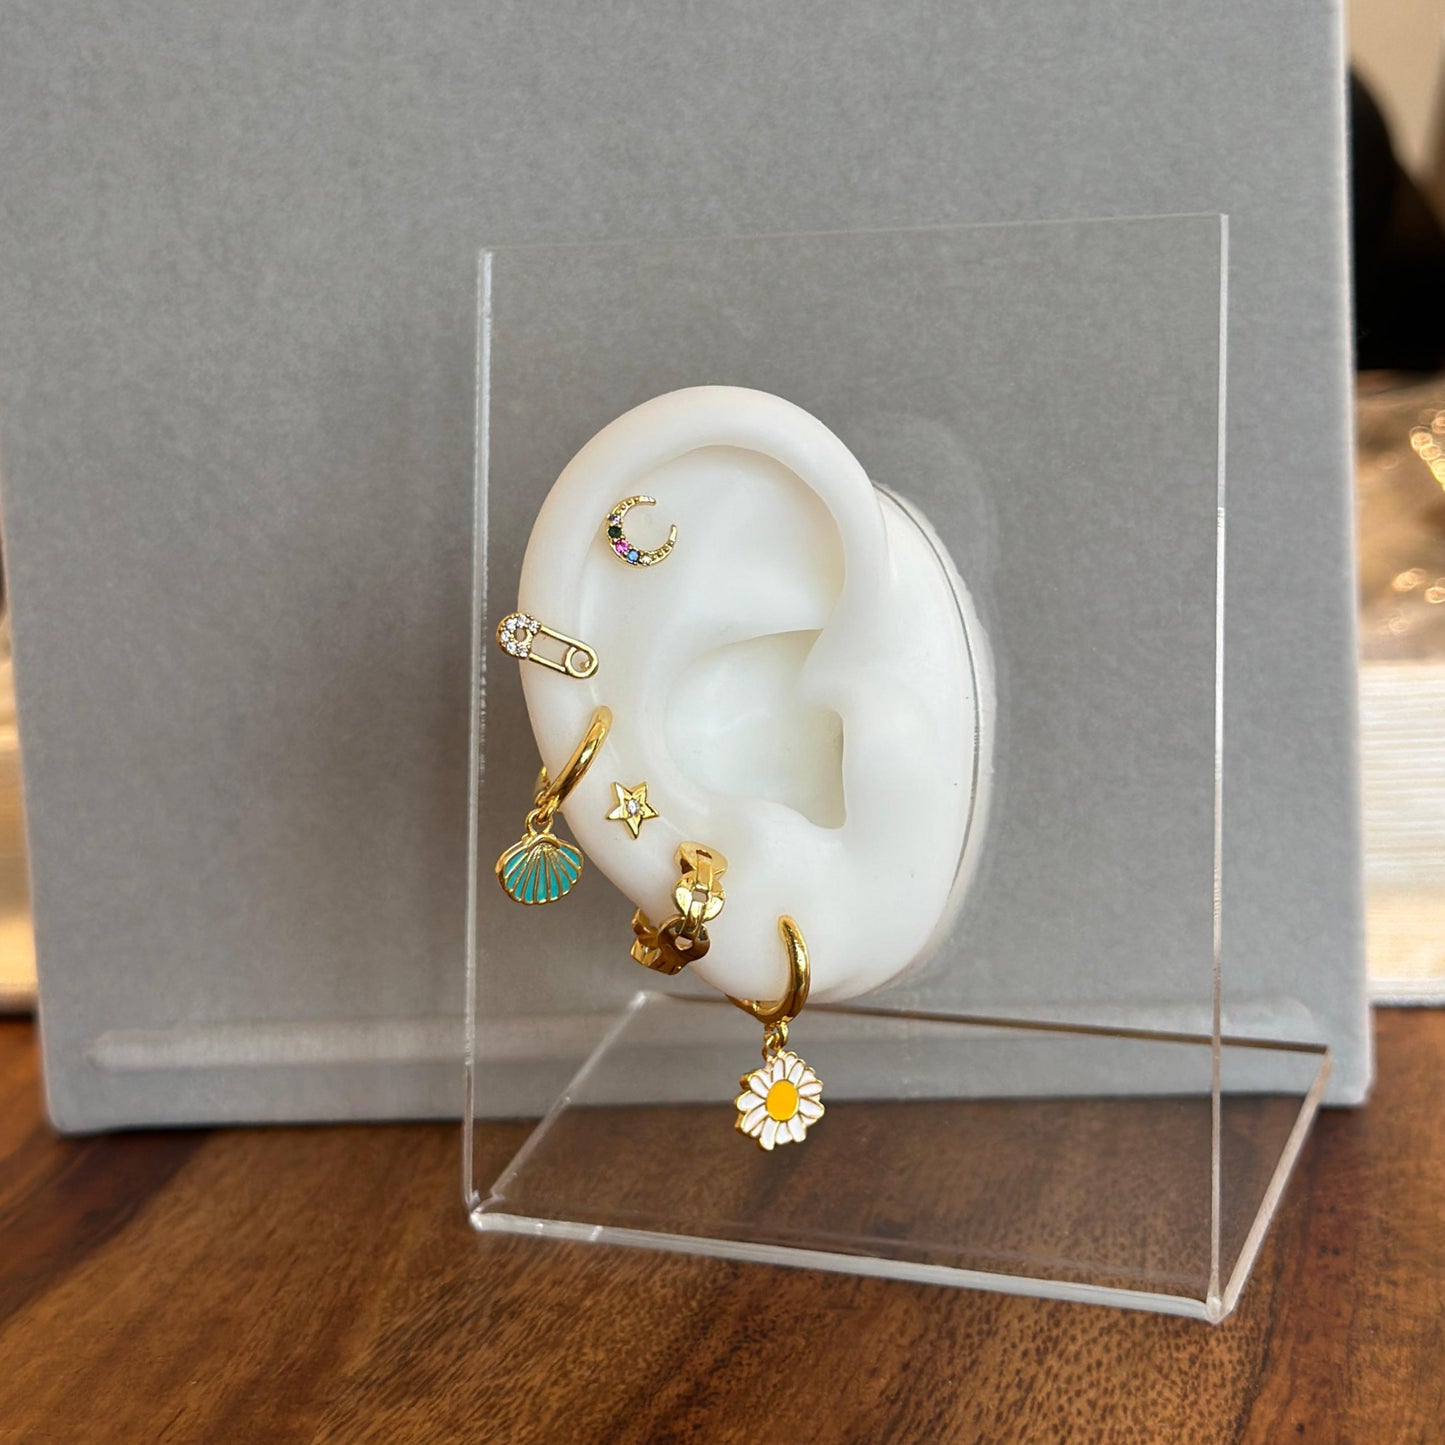 Single Earring Flower Set - Kalopsia Accessories